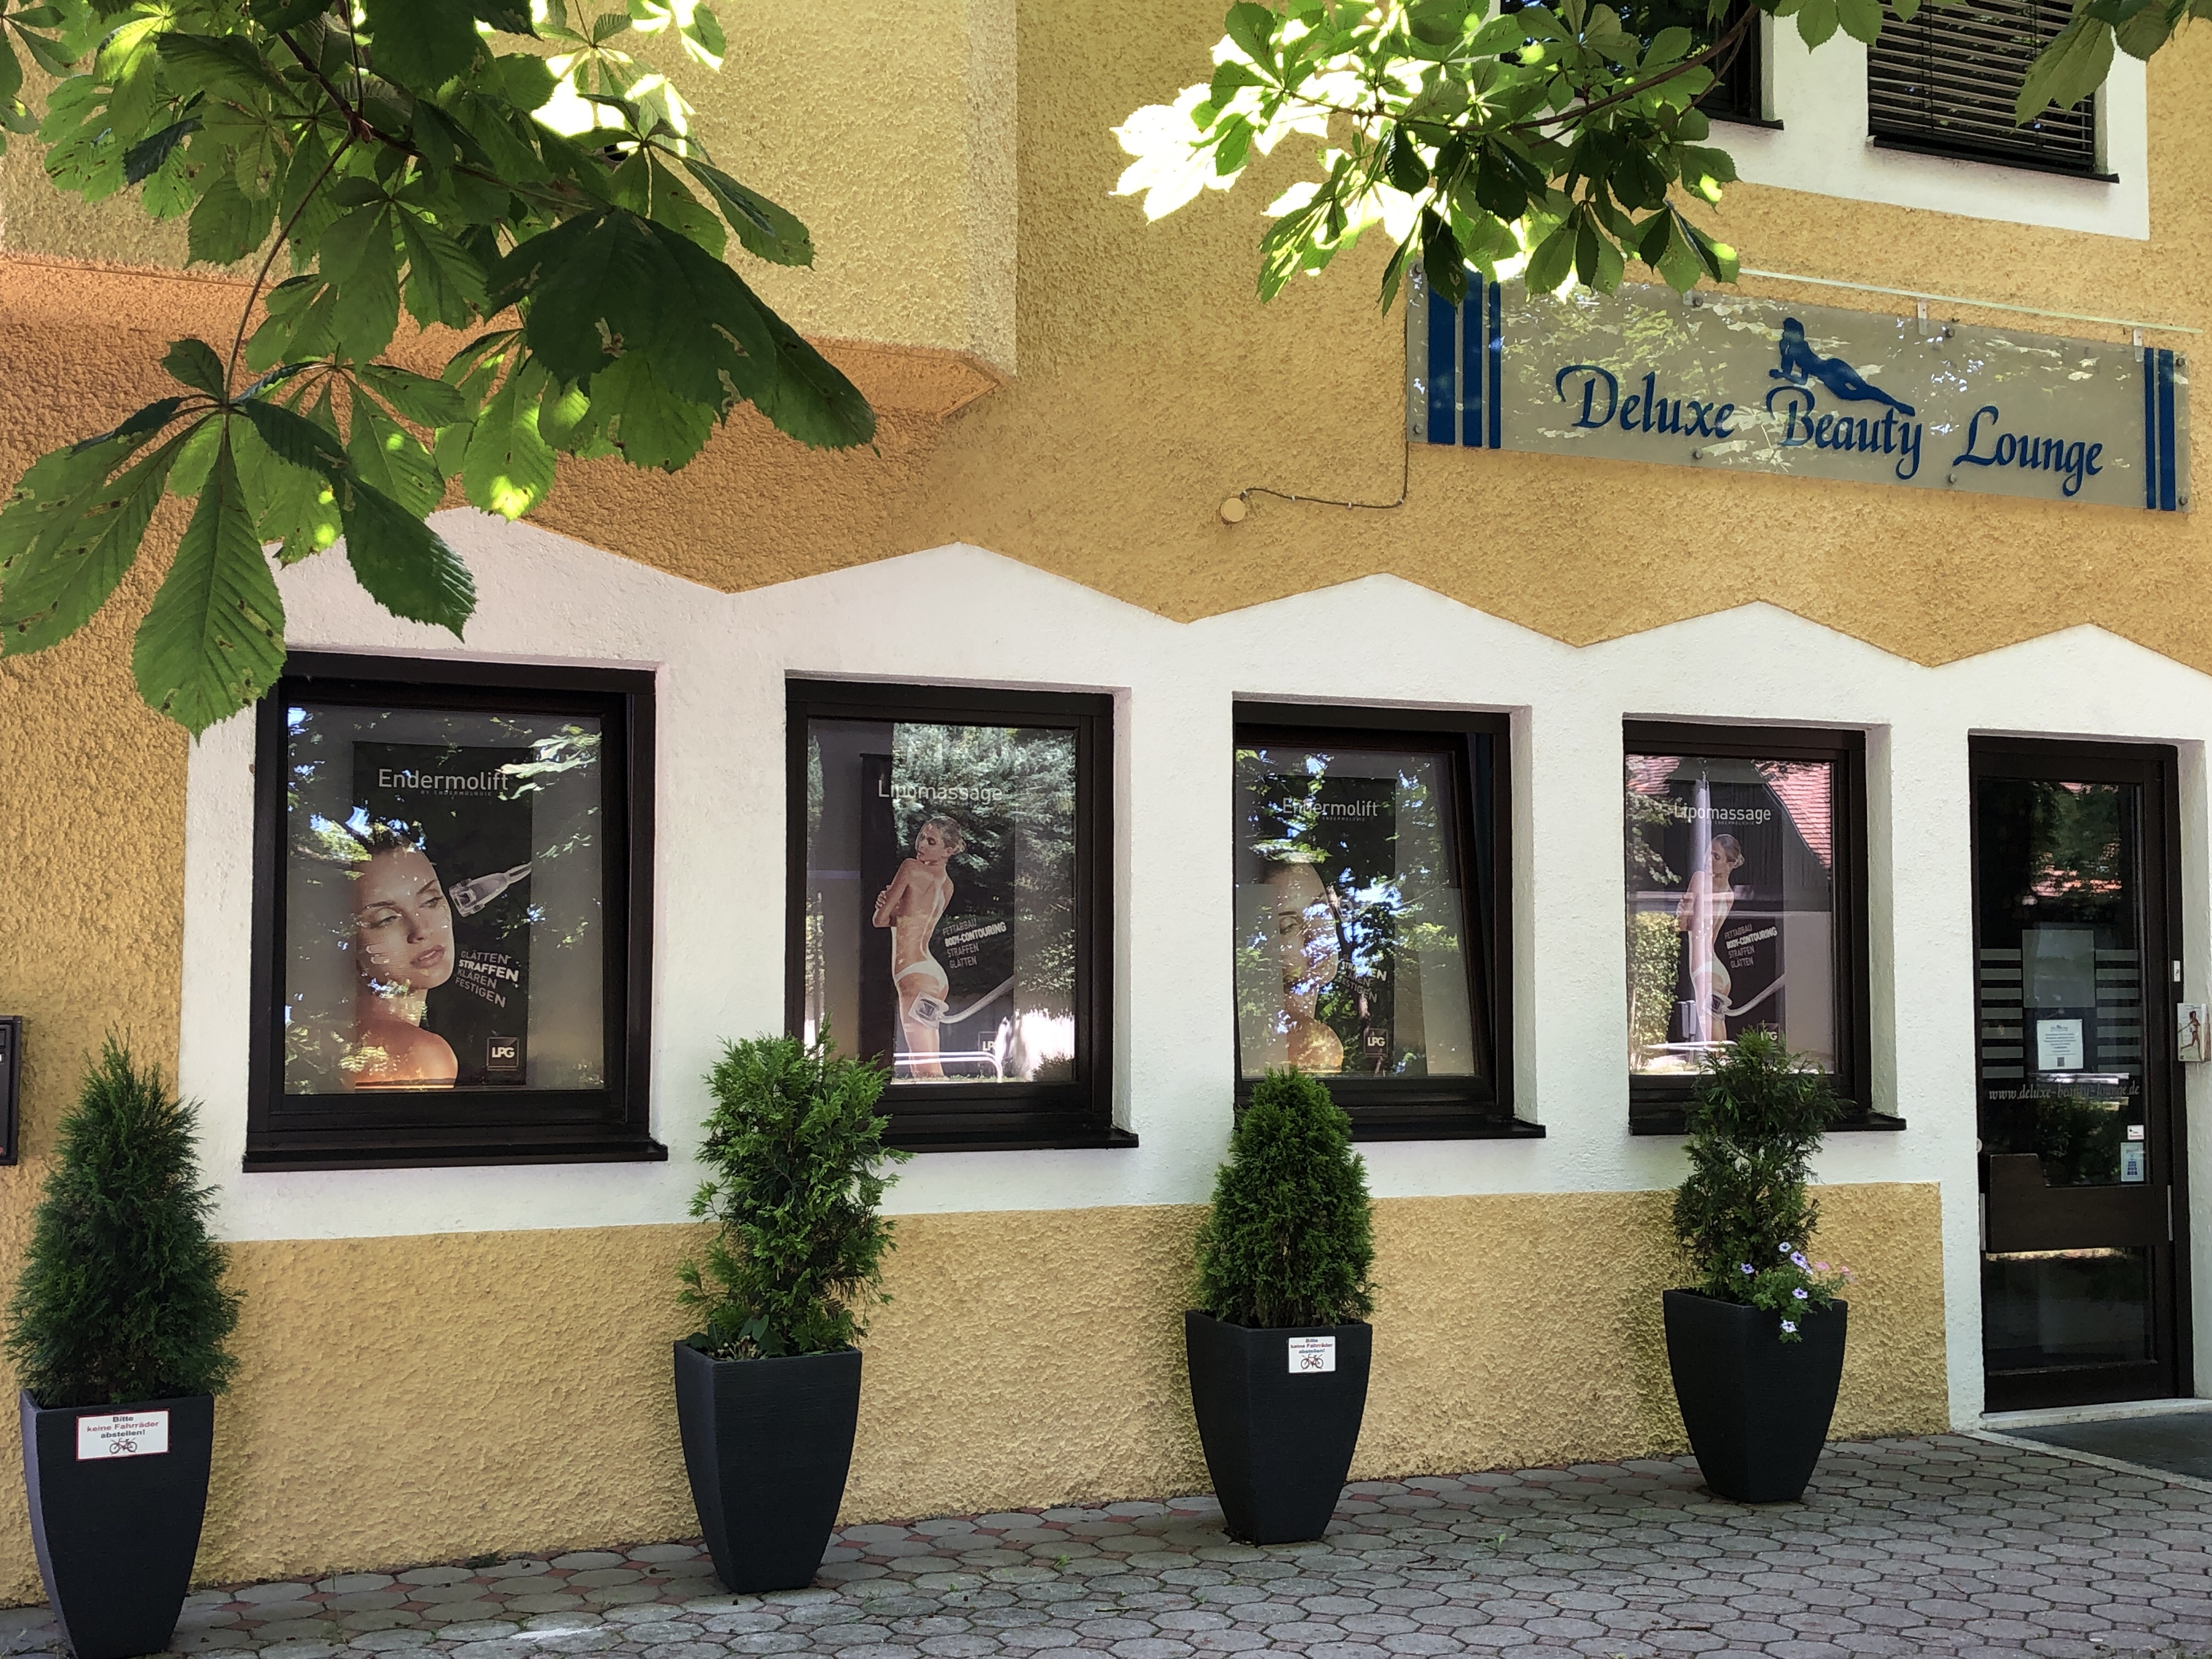 Bild 5 Deluxe Beauty Lounge in München